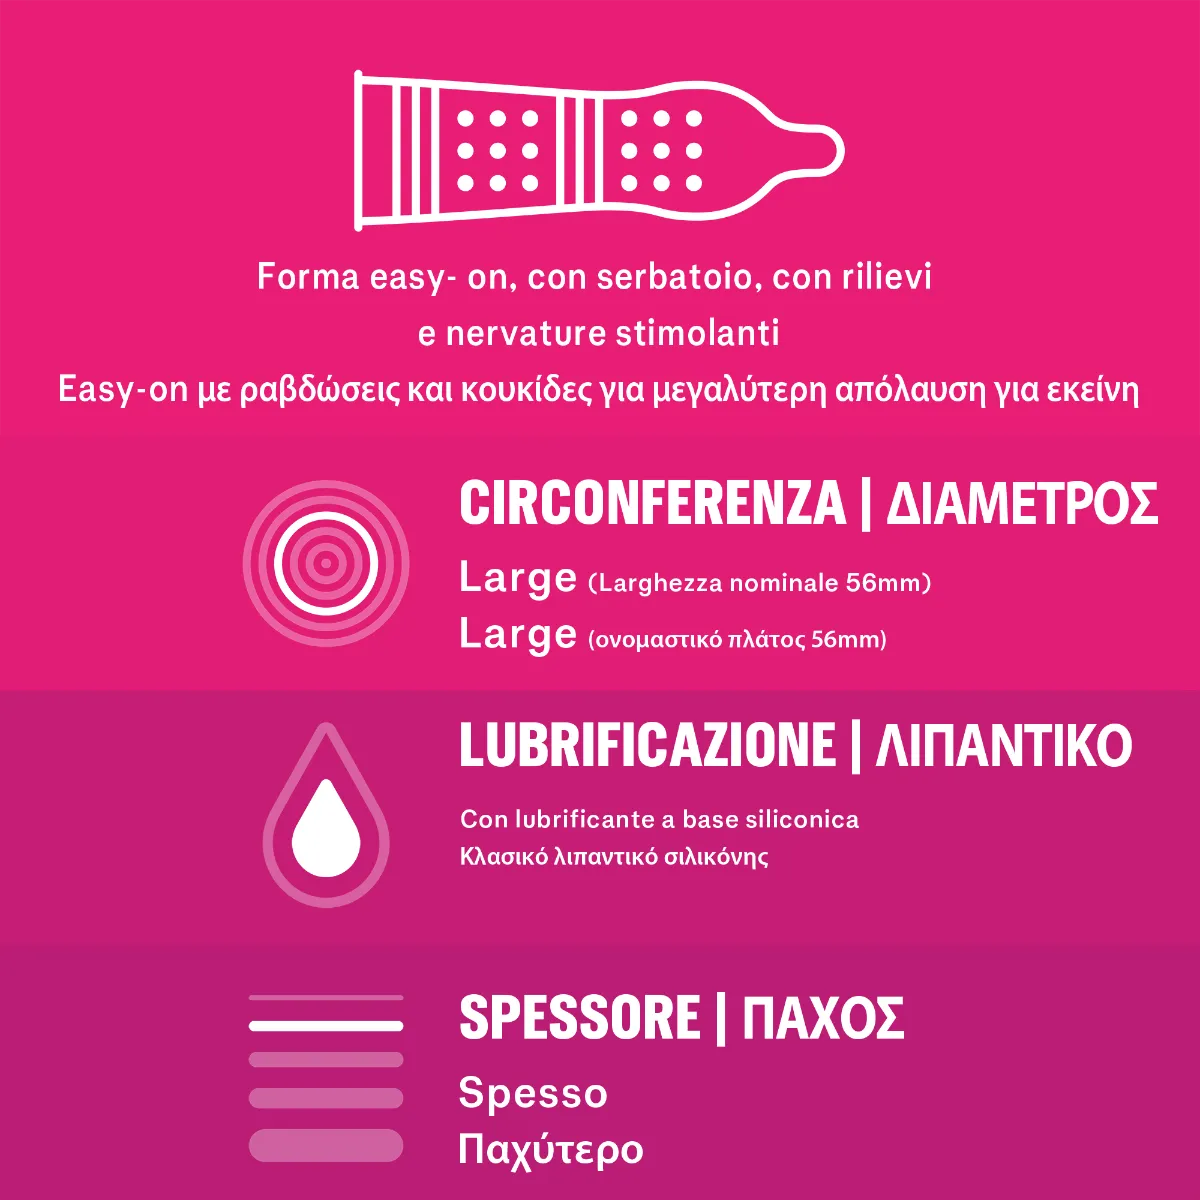 Durex Pleasuremax Preservativi Stimolanti 6 Pezzi 